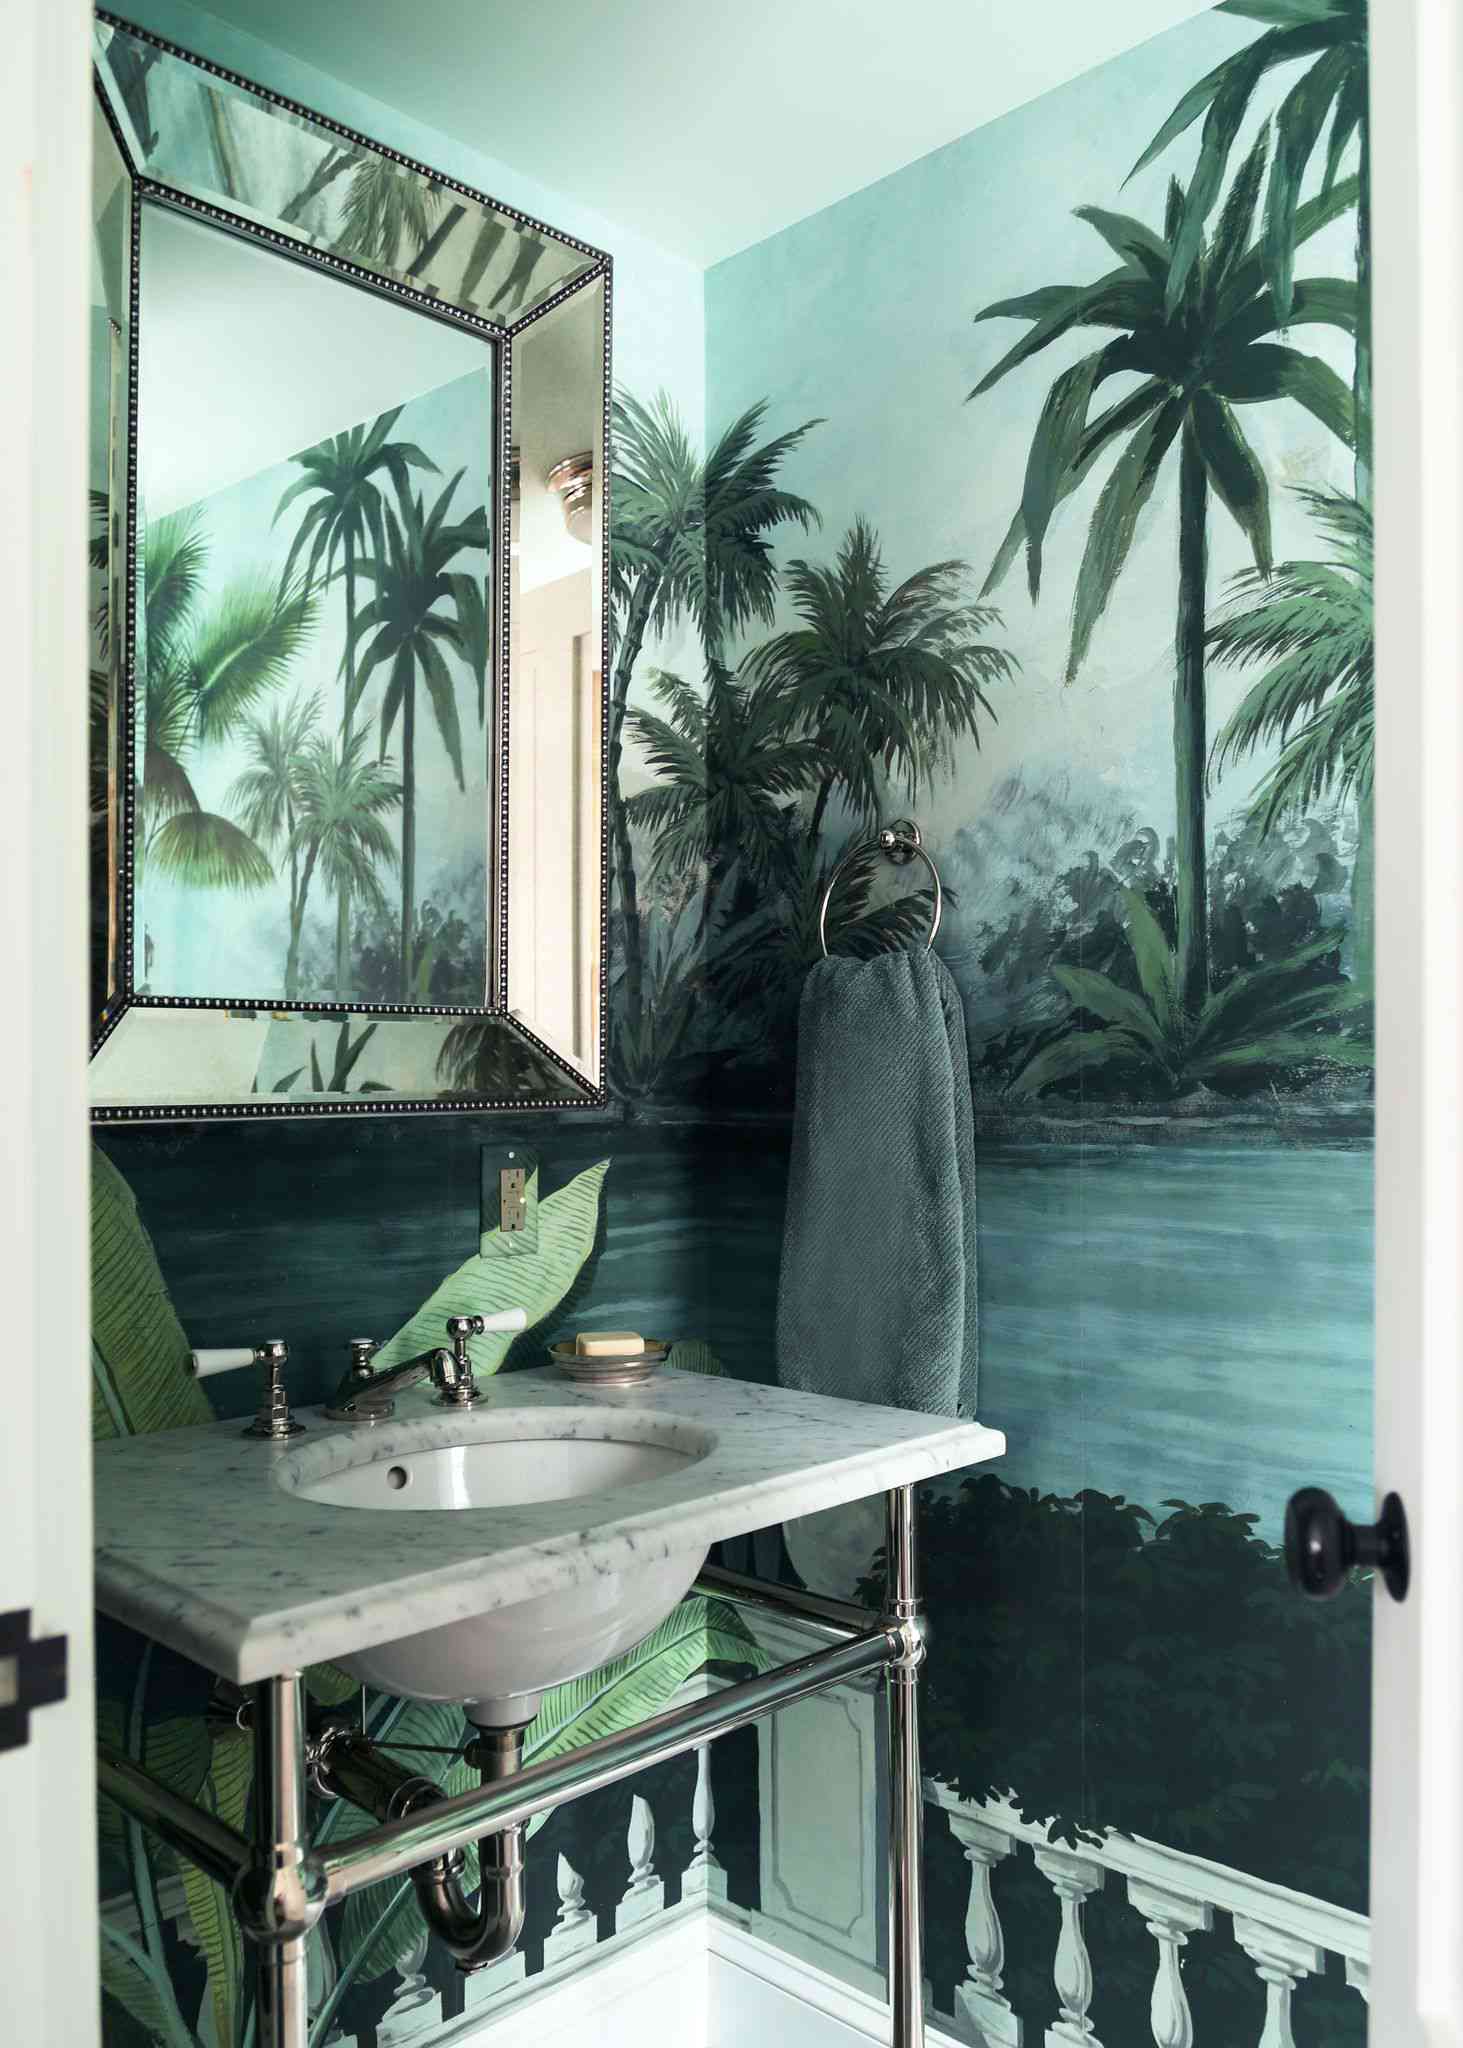 Papier peint tropical mural de la marque française Ananbo, utilisé dans une salle de bain à Martha's Vineyard